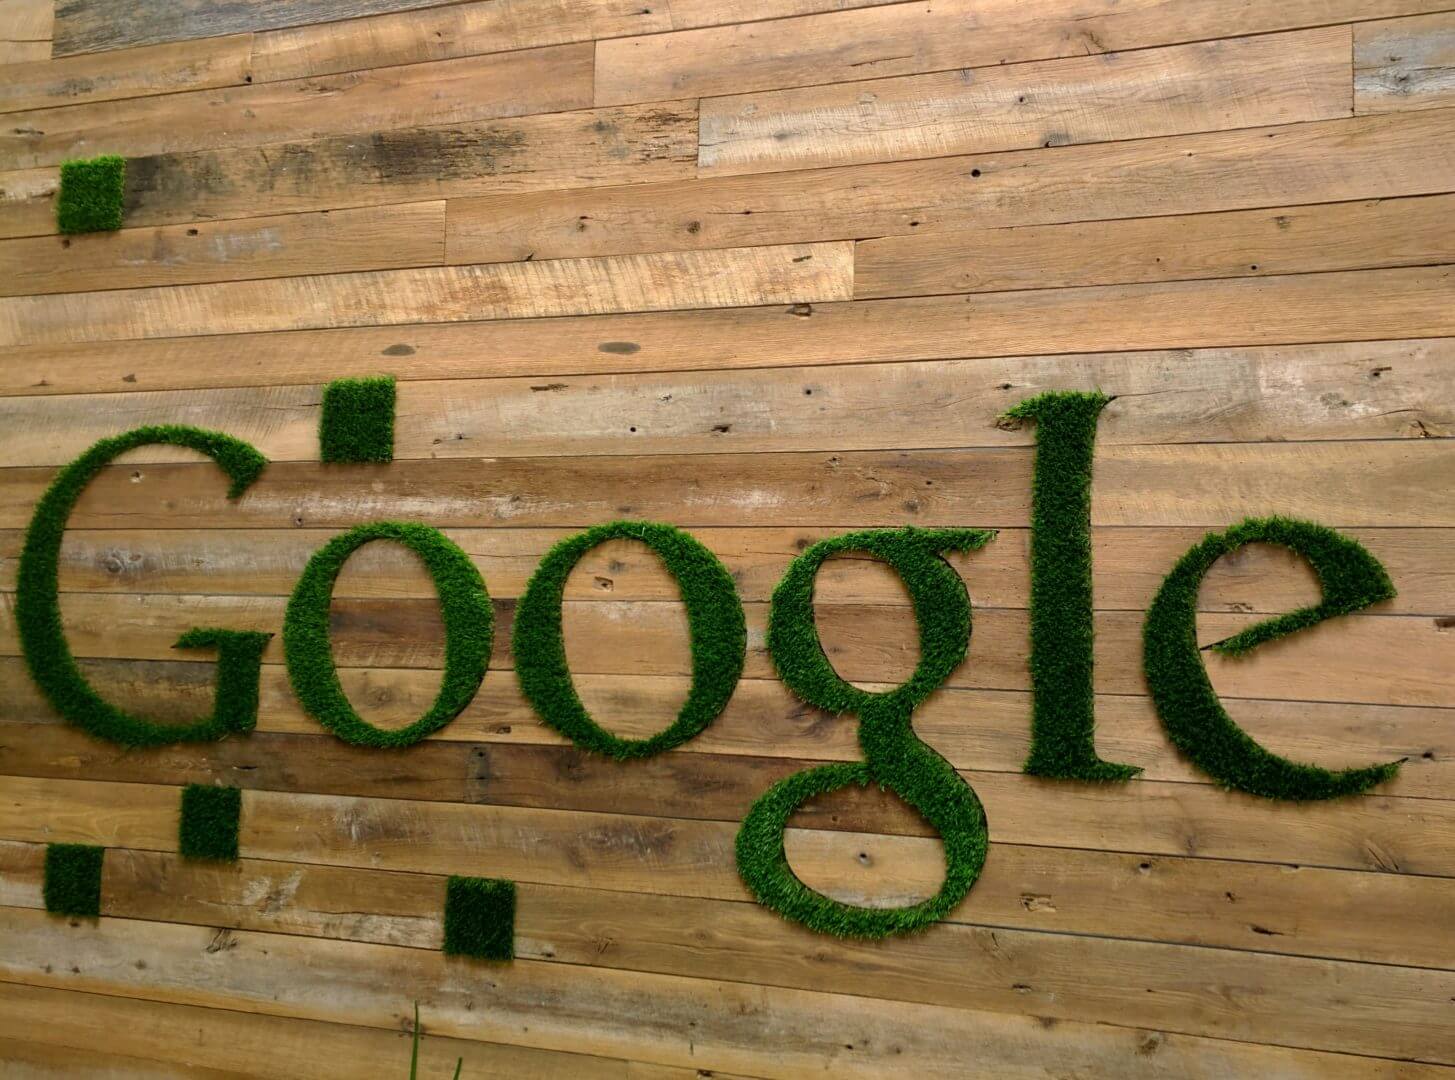 Google agrega el formato de anuncio móvil "Negocios cercanos" para búsquedas relacionadas con la ubicación